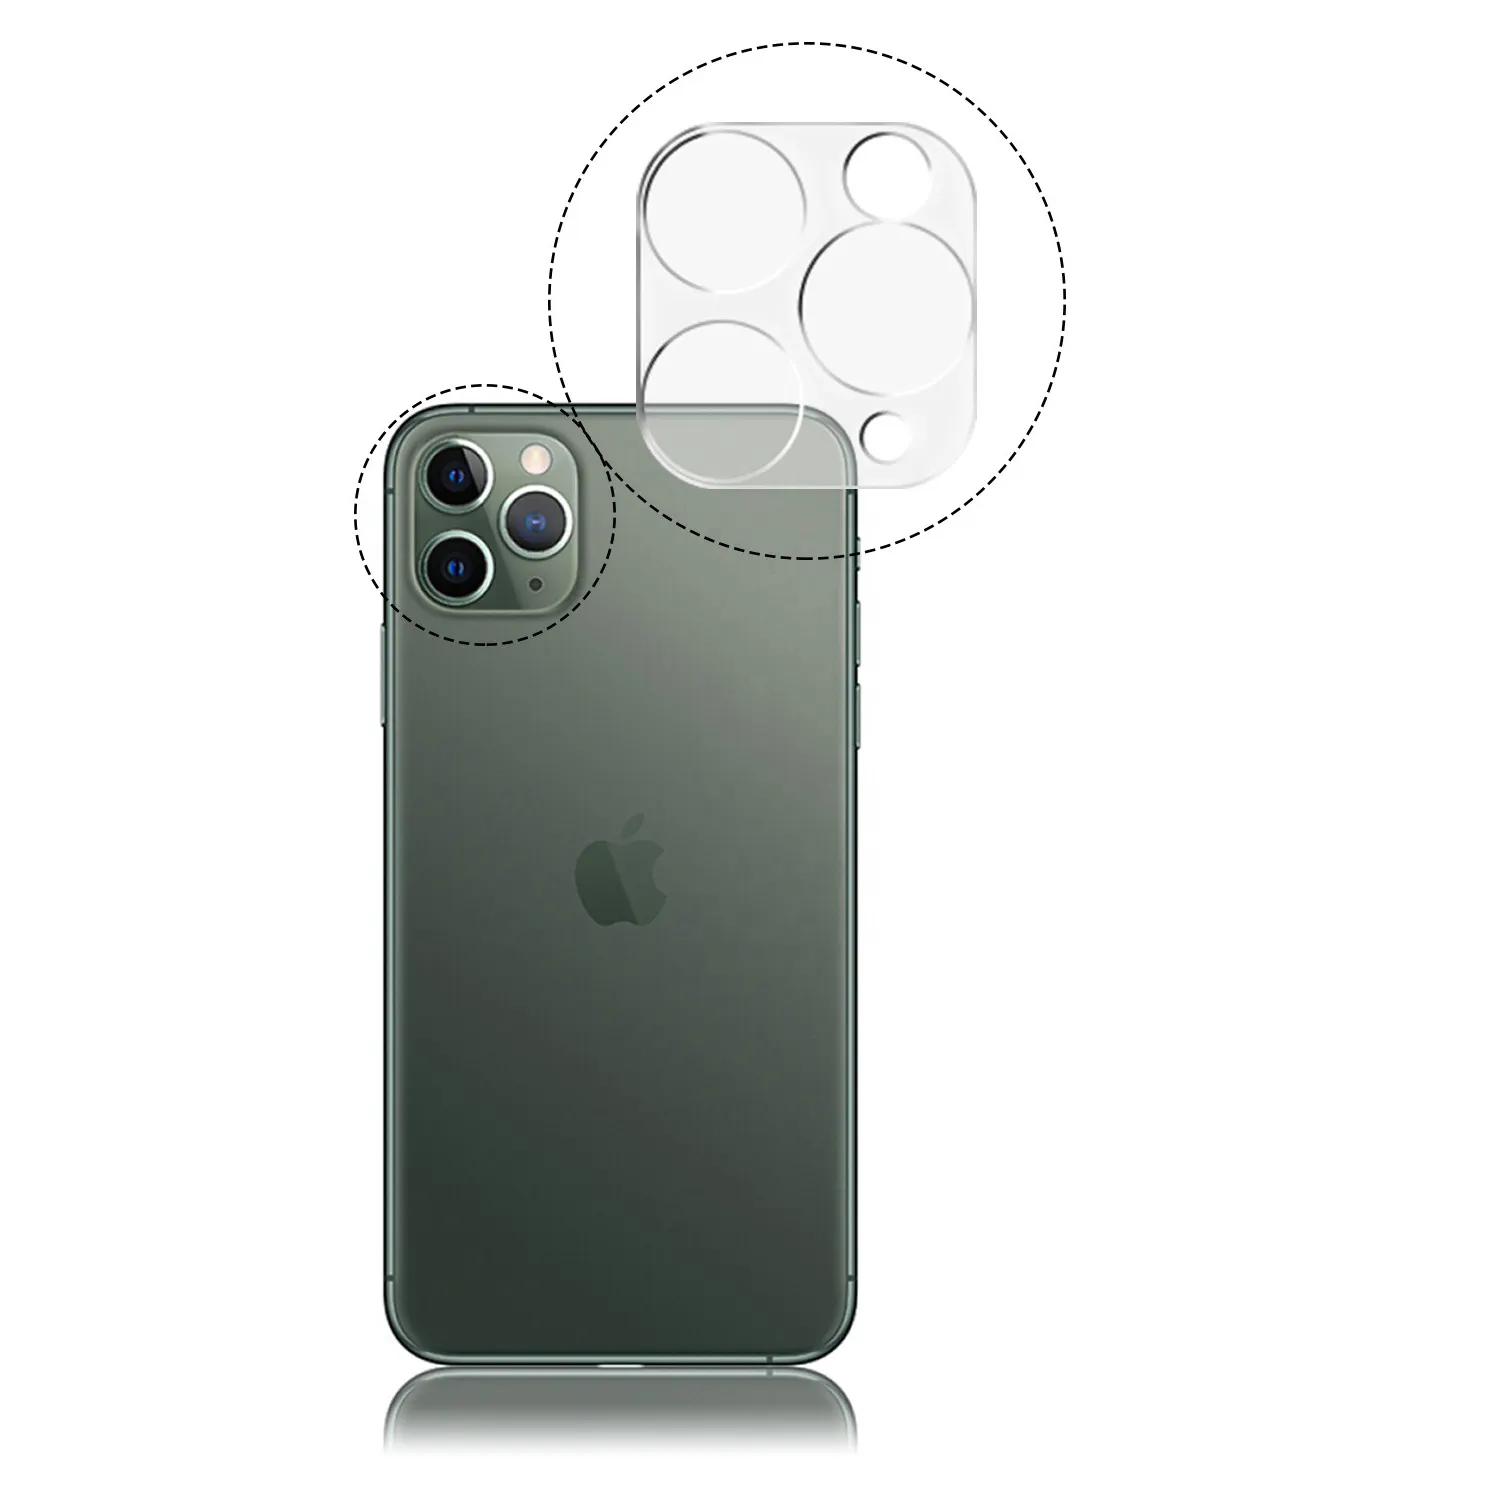 Protecteur d'objectif d'appareil photo pour iPhone 11 Pro MAX, 3D, transparent HD, verre trempé 9H, anti-rayures, Anti-empreintes digitales